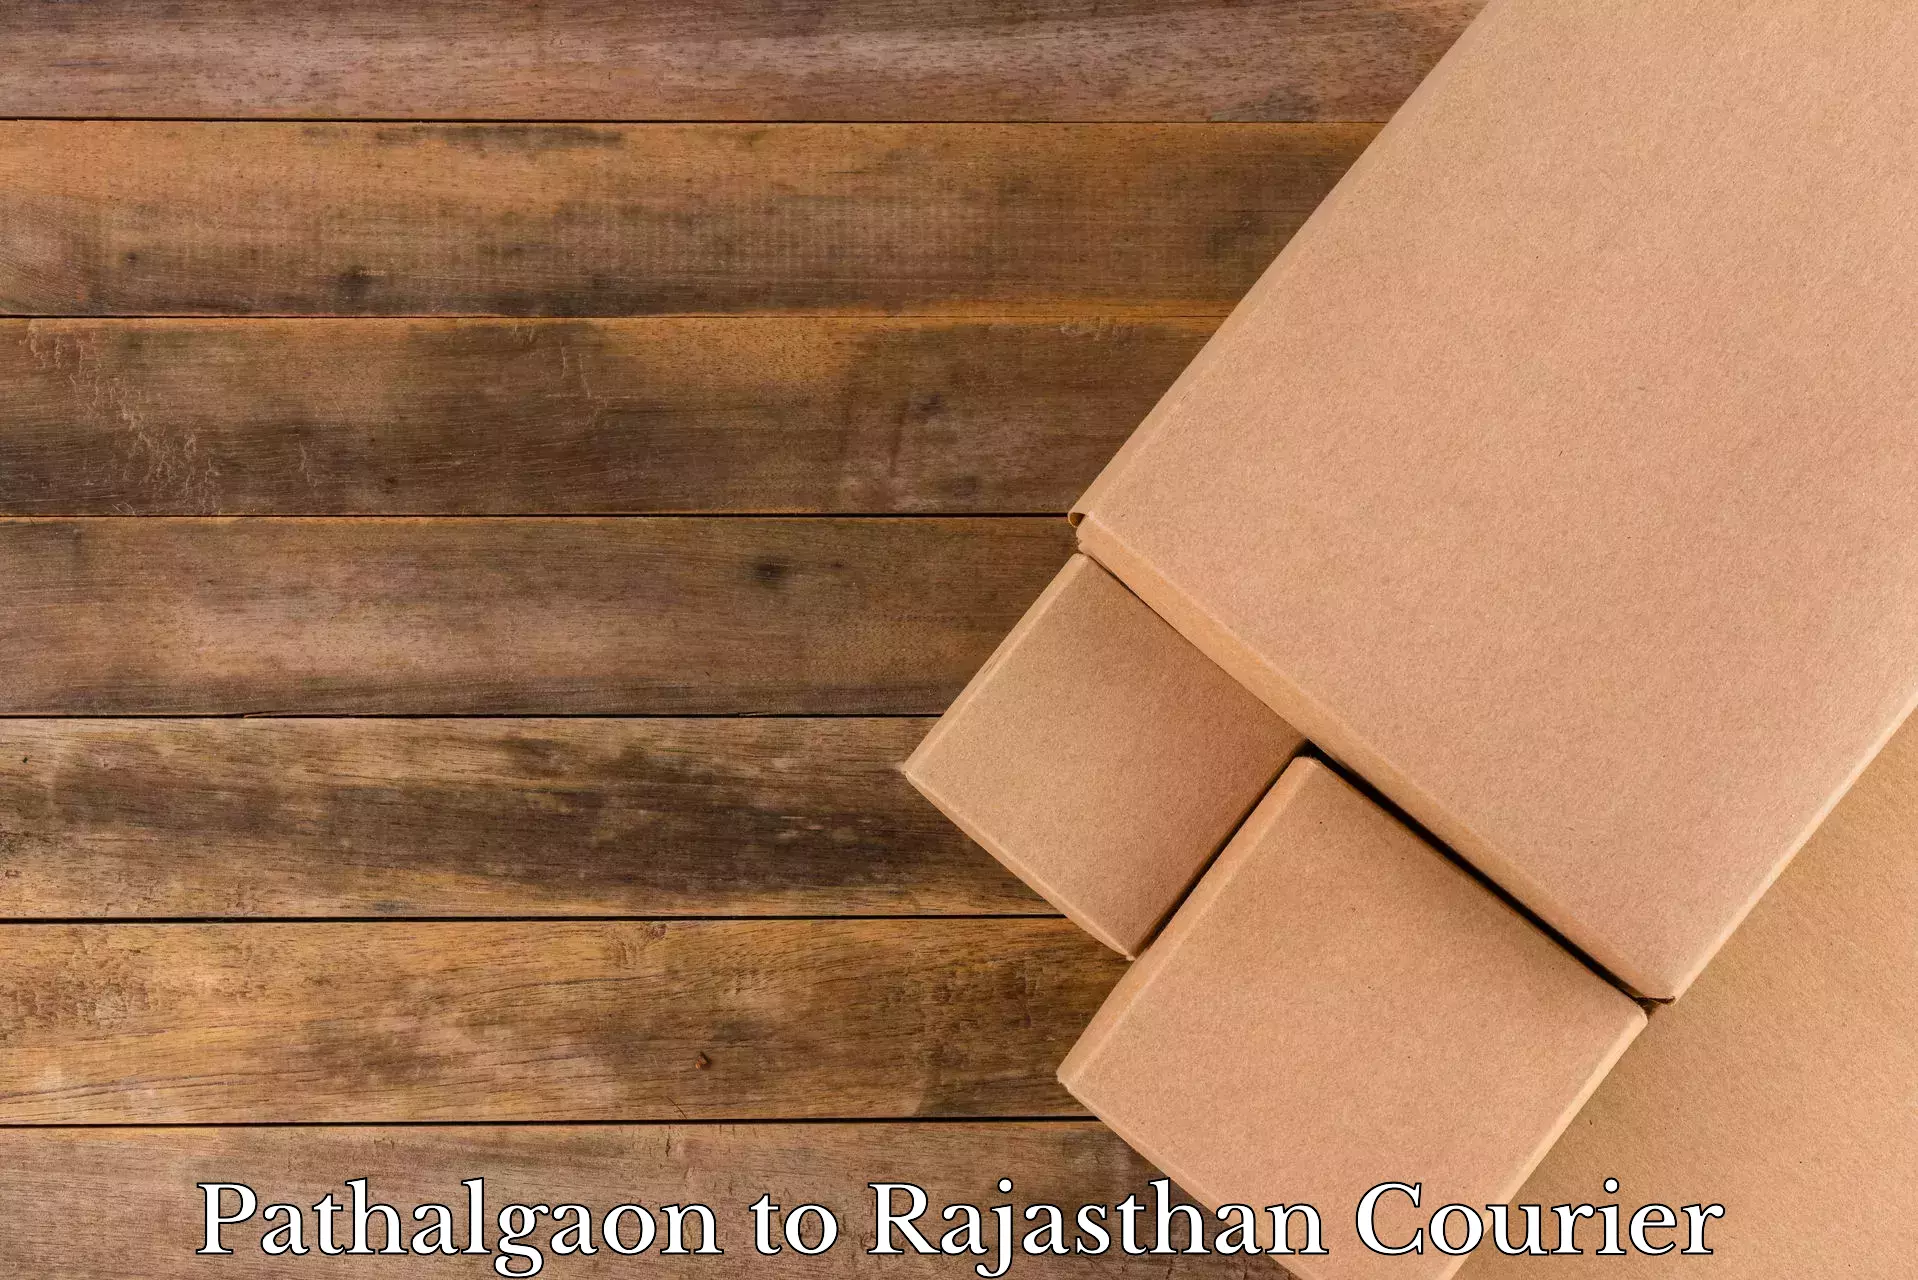 Trusted moving company Pathalgaon to Sri Vijaynagar